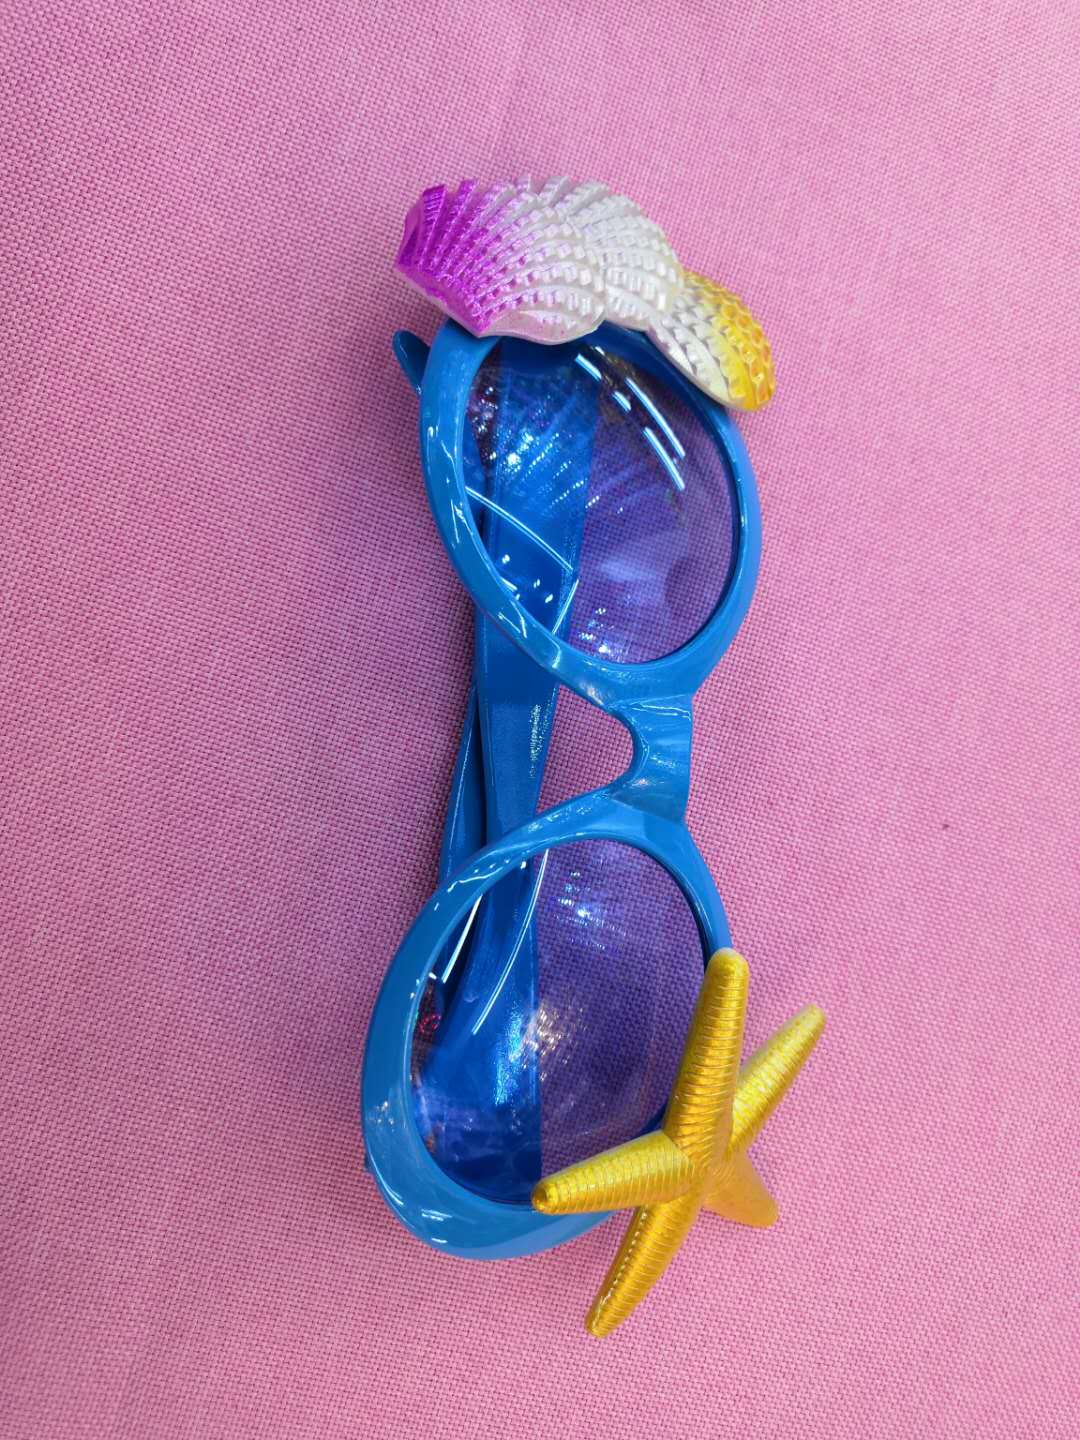 派对搞怪眼镜海星面具眼镜复活节派对搞怪眼镜聚会玩具详情图1